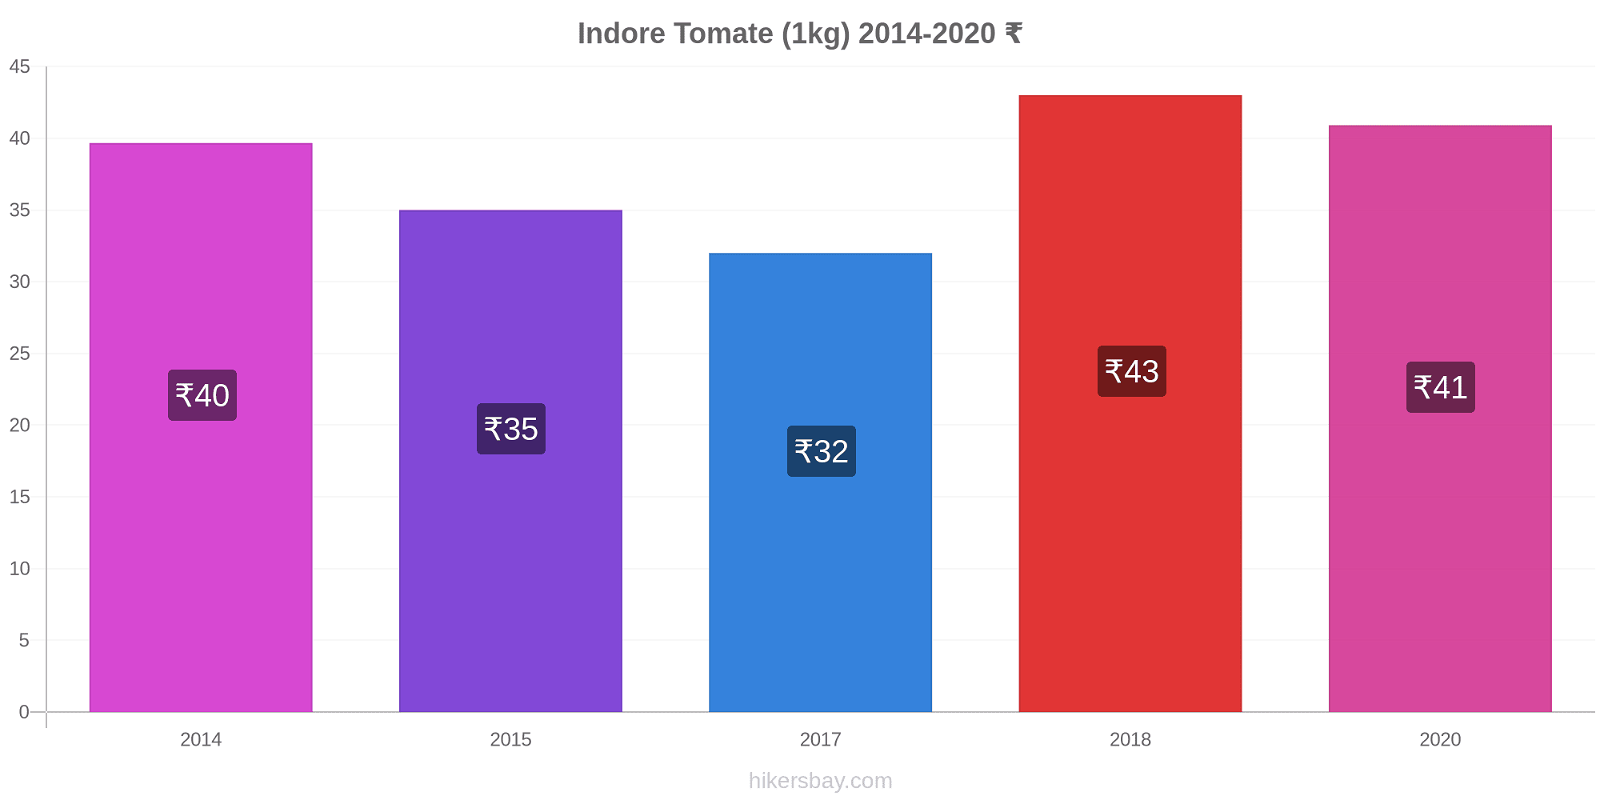 Indore changements de prix Tomate (1kg) hikersbay.com